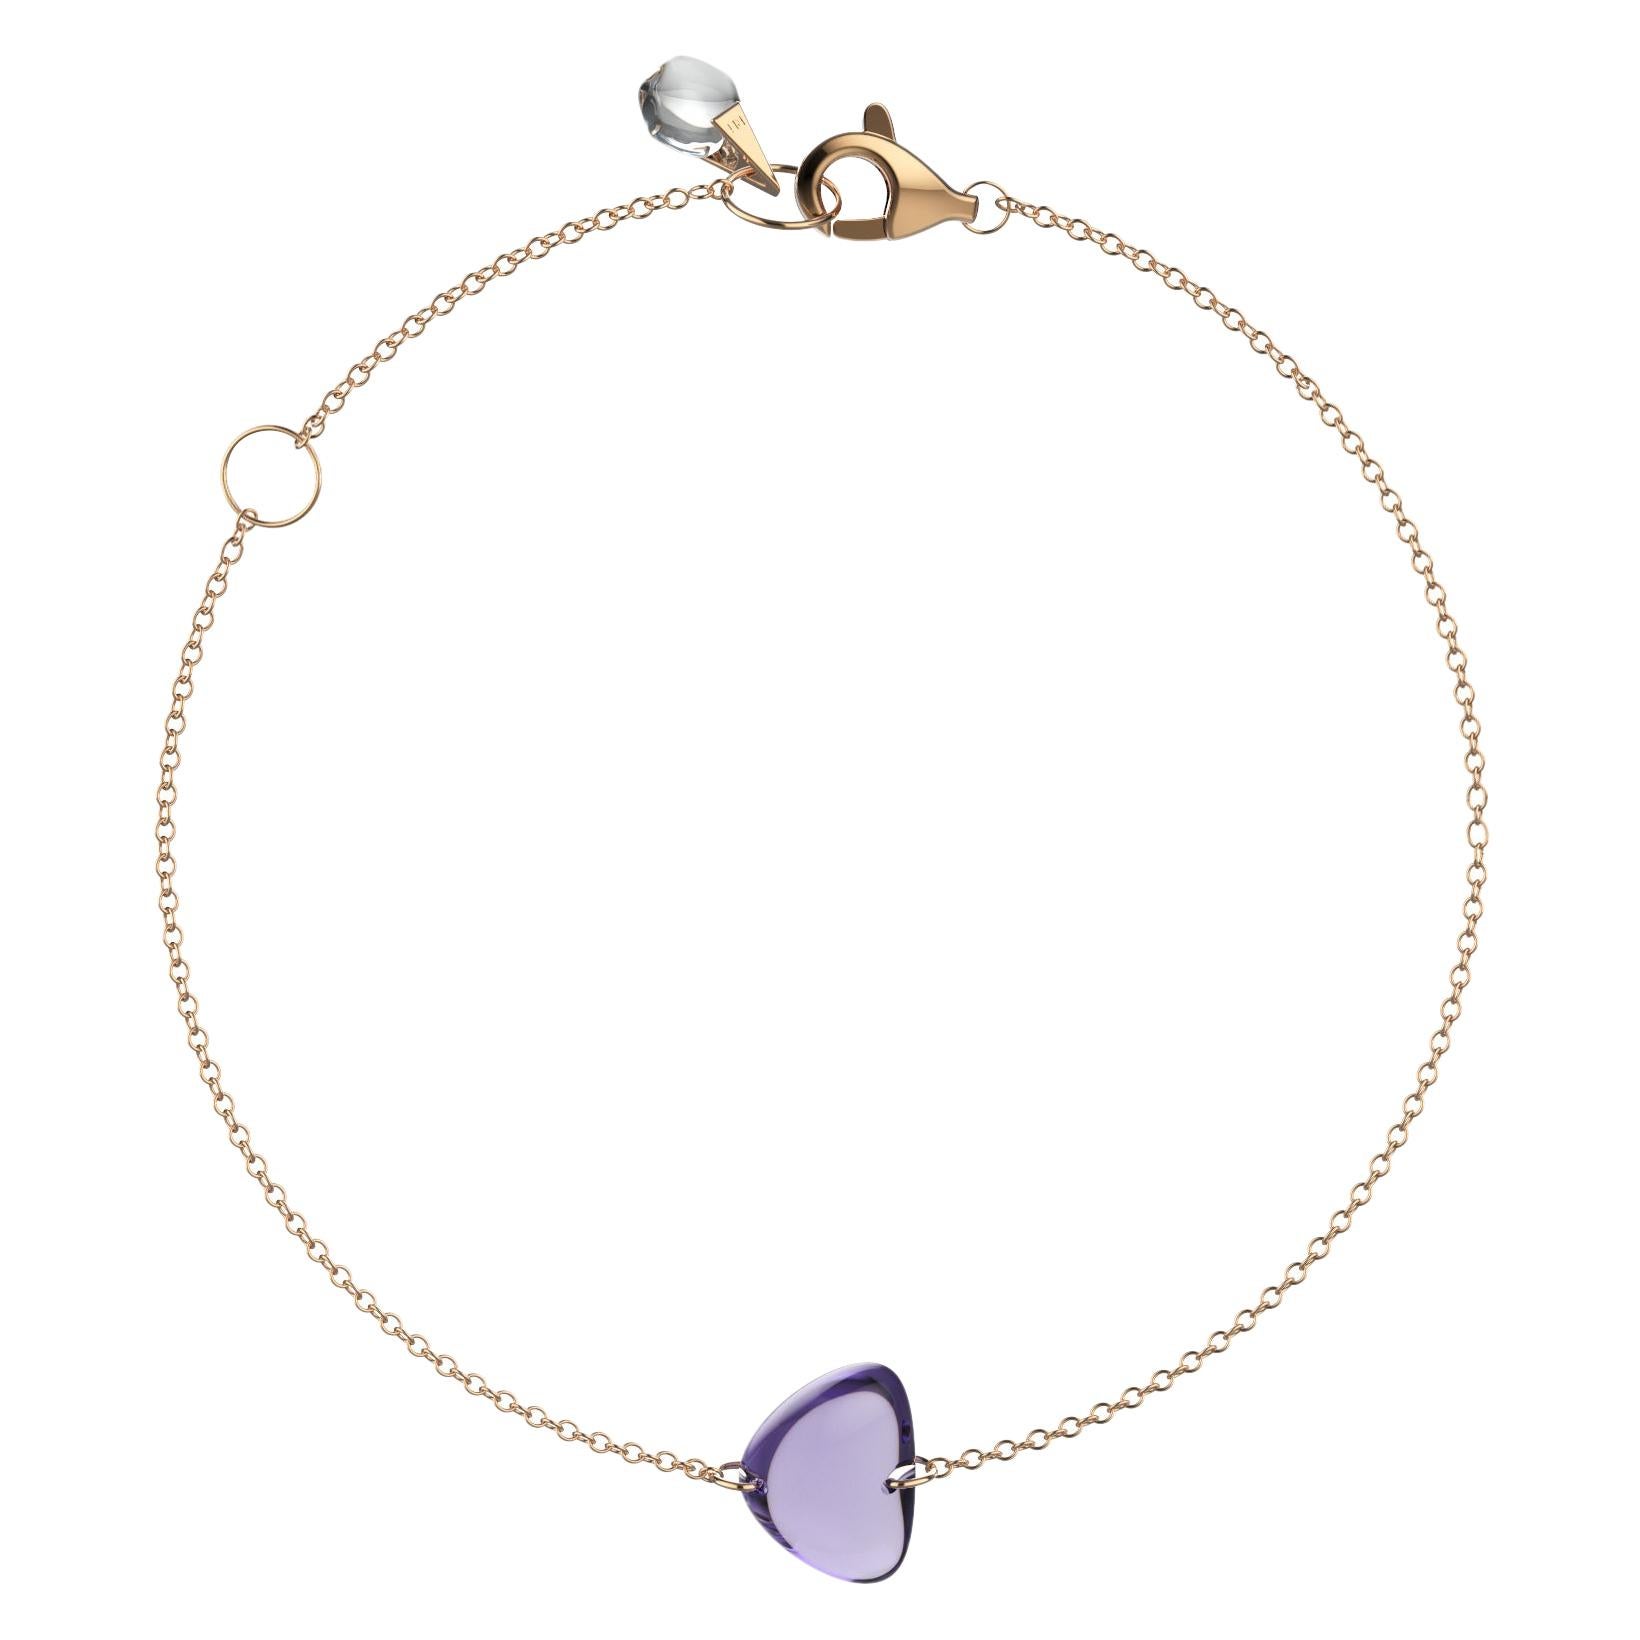 Rebecca Li Crystal Link Bracelet, 18 Karat Rose Gold with Amethyst and Crystal